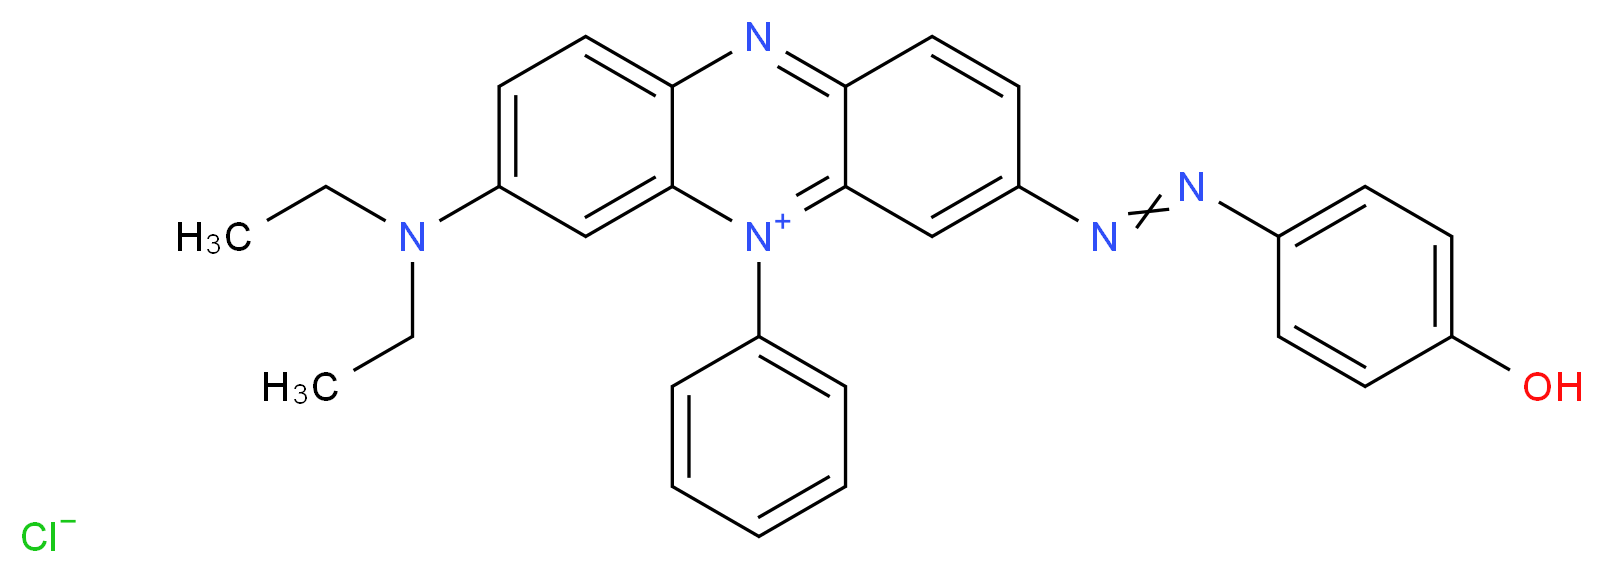 4443-99-6 molecular structure